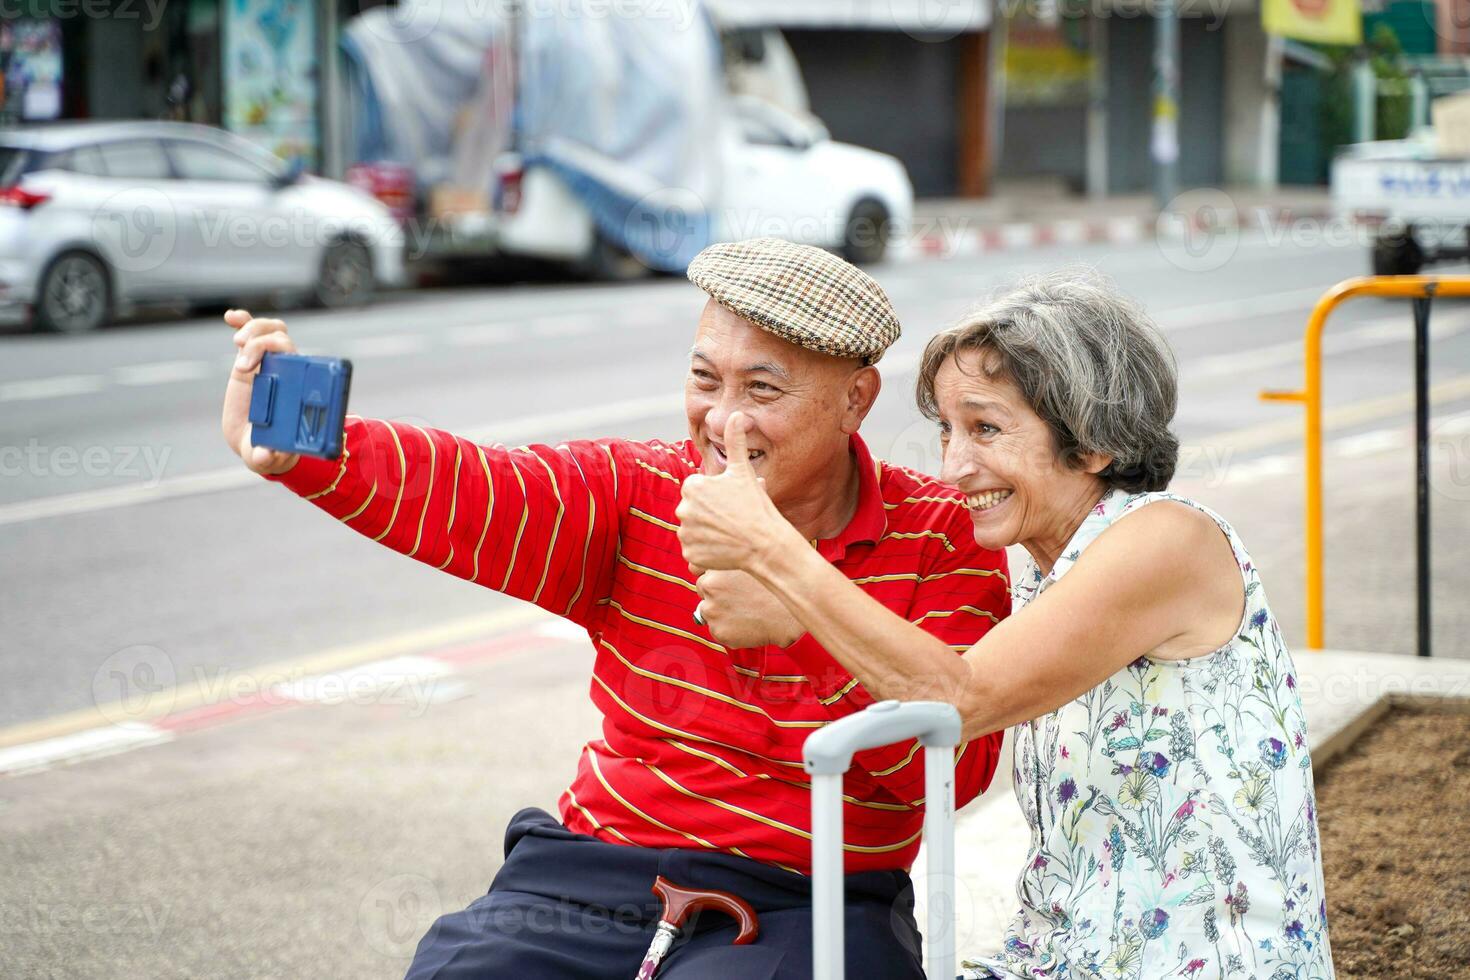 mayor chino turista con su amigo europeo poses contento pulgares arriba y tomar un foto selfie en borroso de ciudad antecedentes.